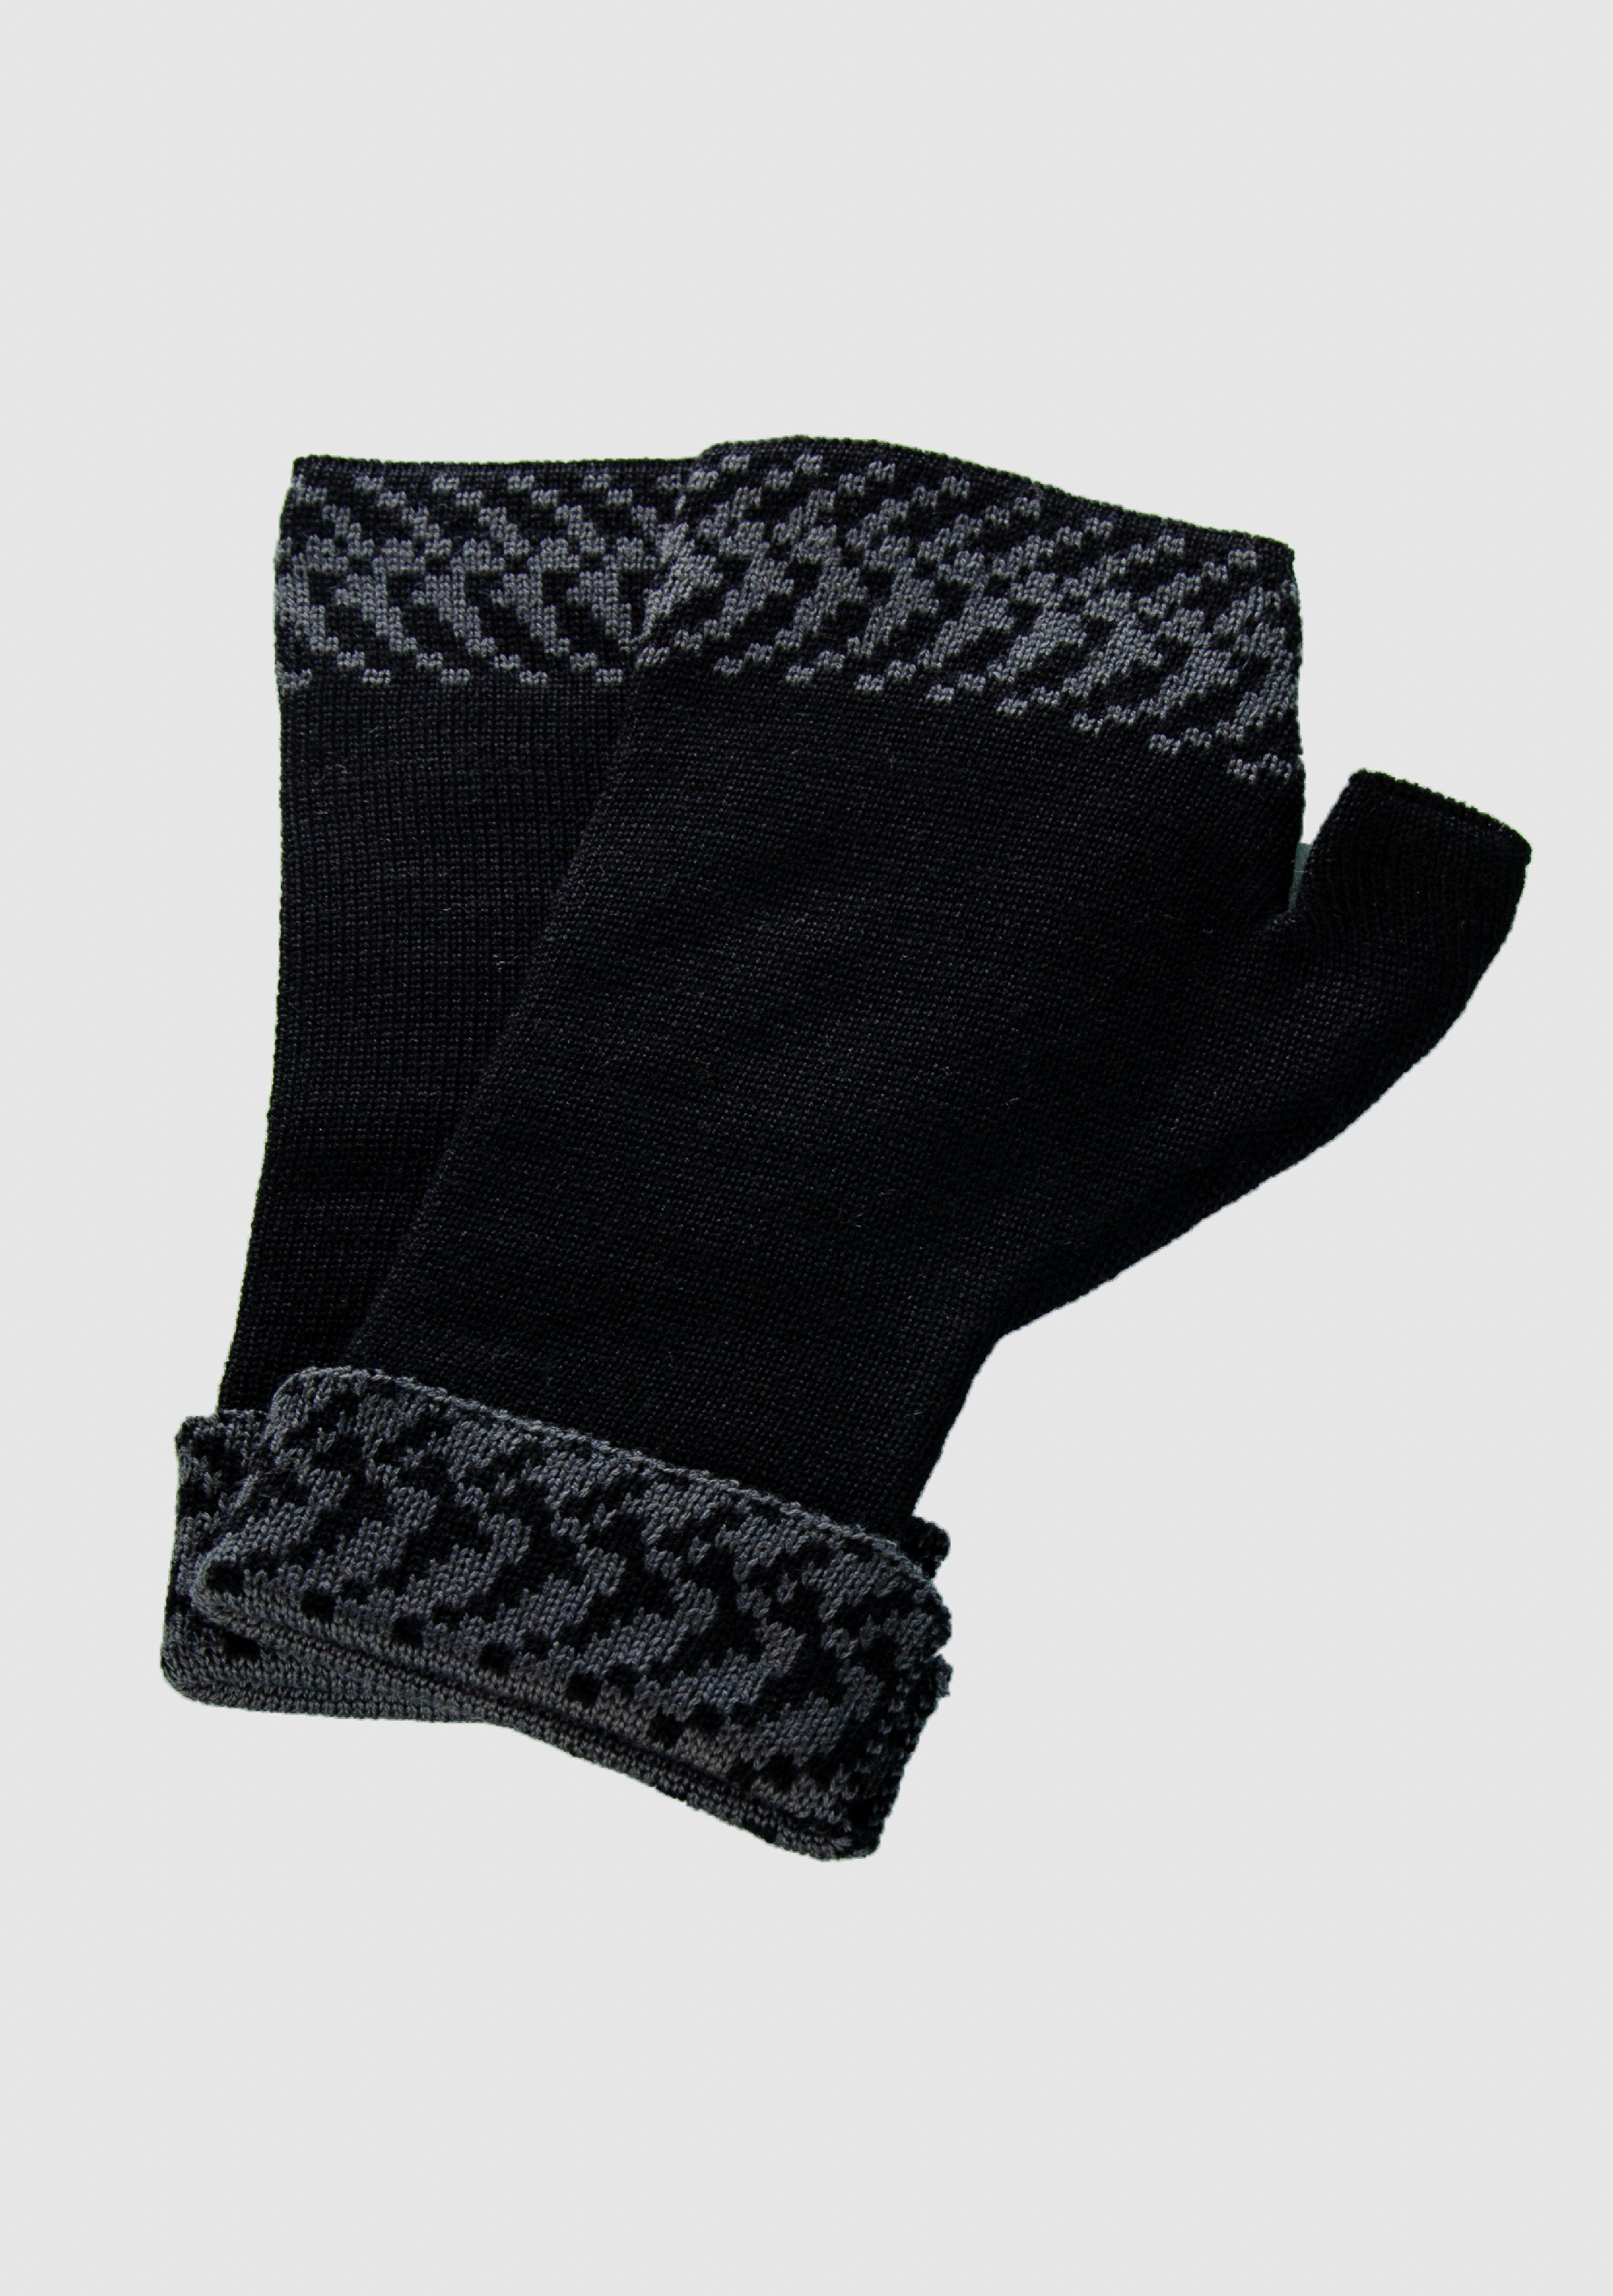 LANARTO slow fashion Pixel in aus Farben schwarz_graphit Handwärmer Merino Strickhandschuhe 100% extrasoft vielen Merino